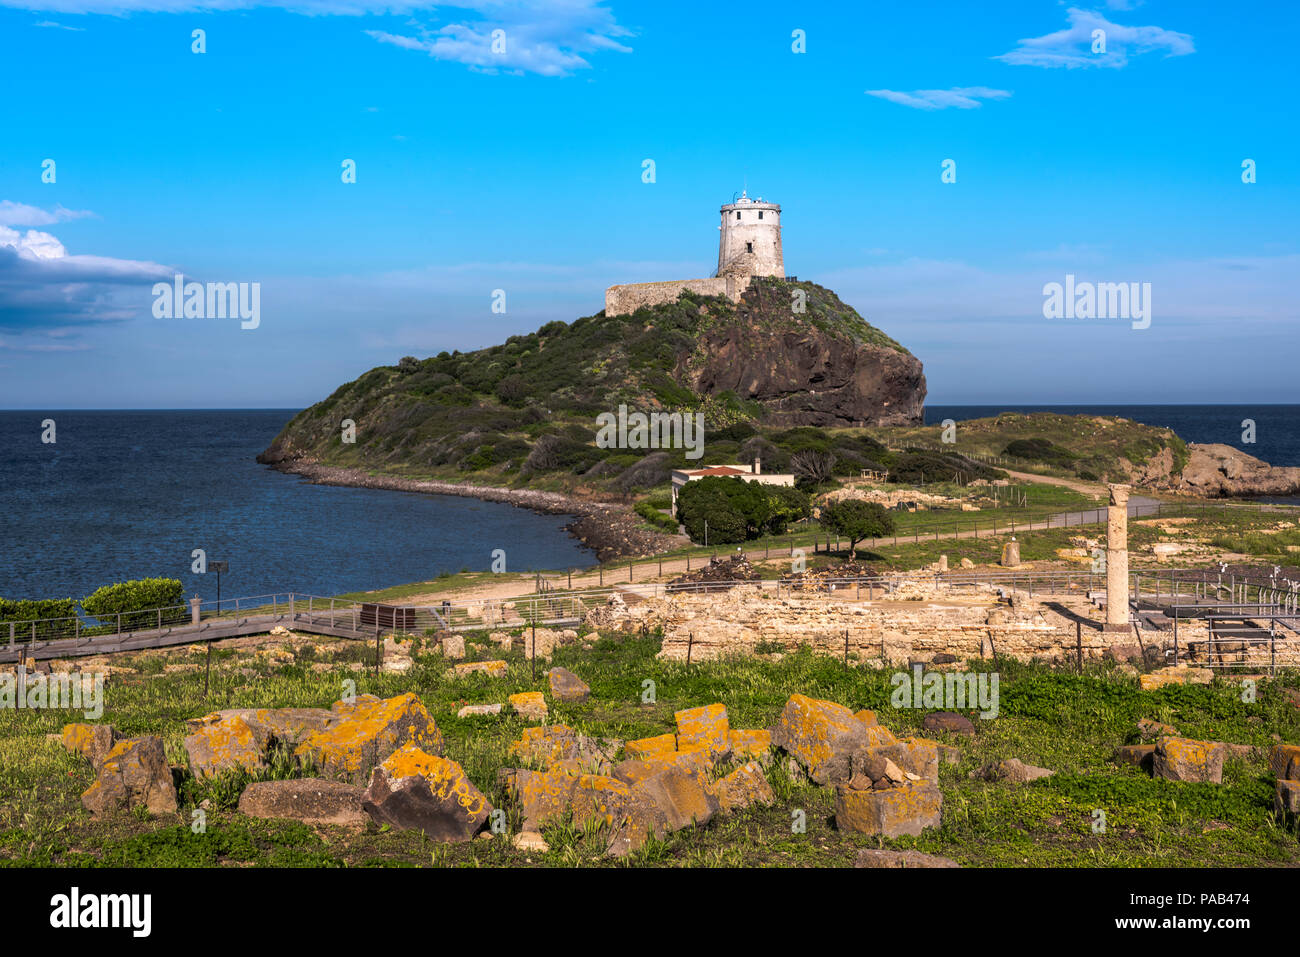 Antica torre su una collina al mare mediterraneo con le rovine di Tharros davanti, Sardegna, Italia Foto Stock